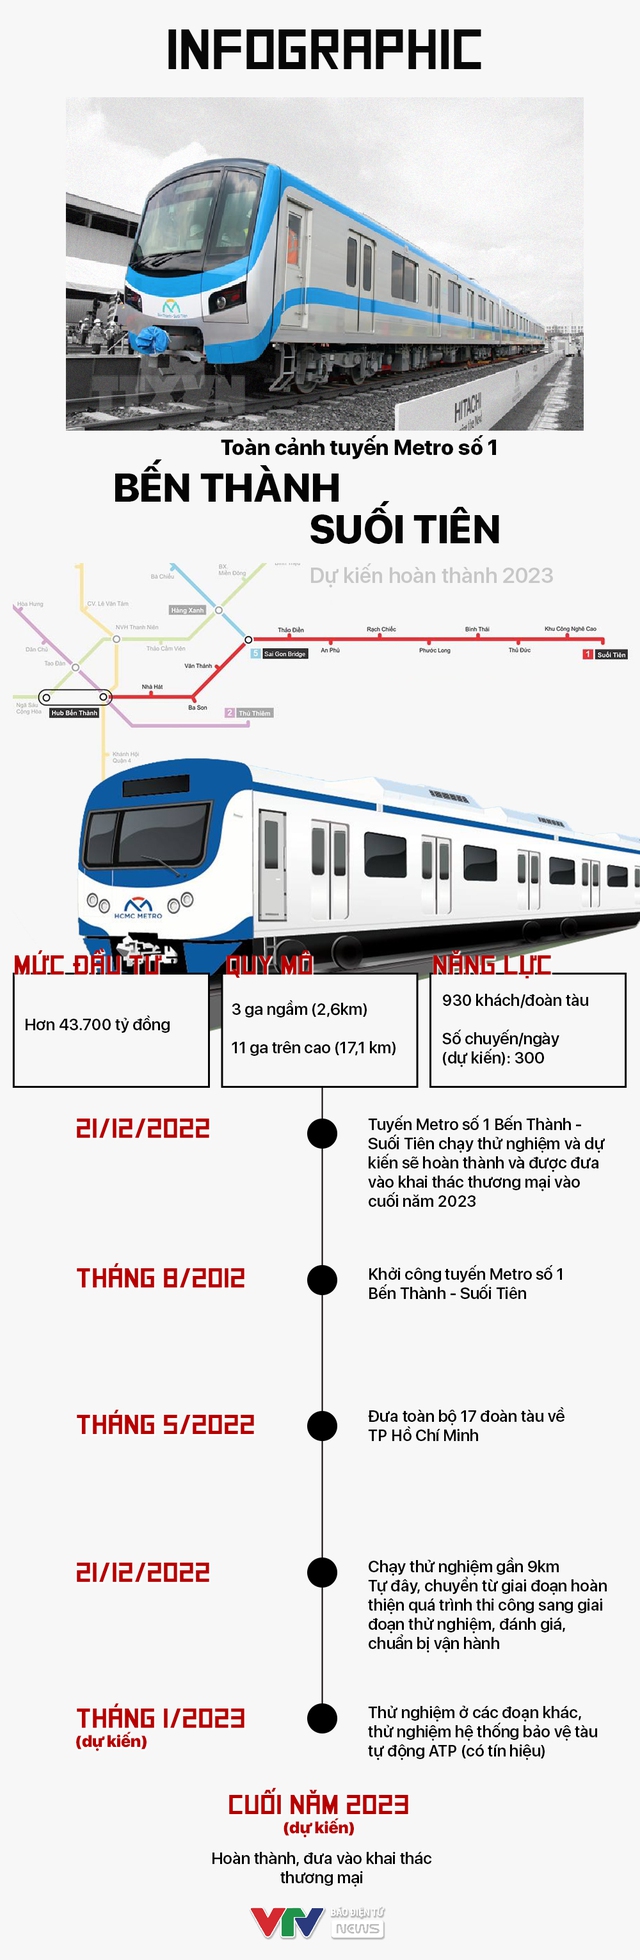 INFOGRAPHIC: Toàn cảnh tuyến Metro số 1 Bến Thành - Suối Tiên dự ...